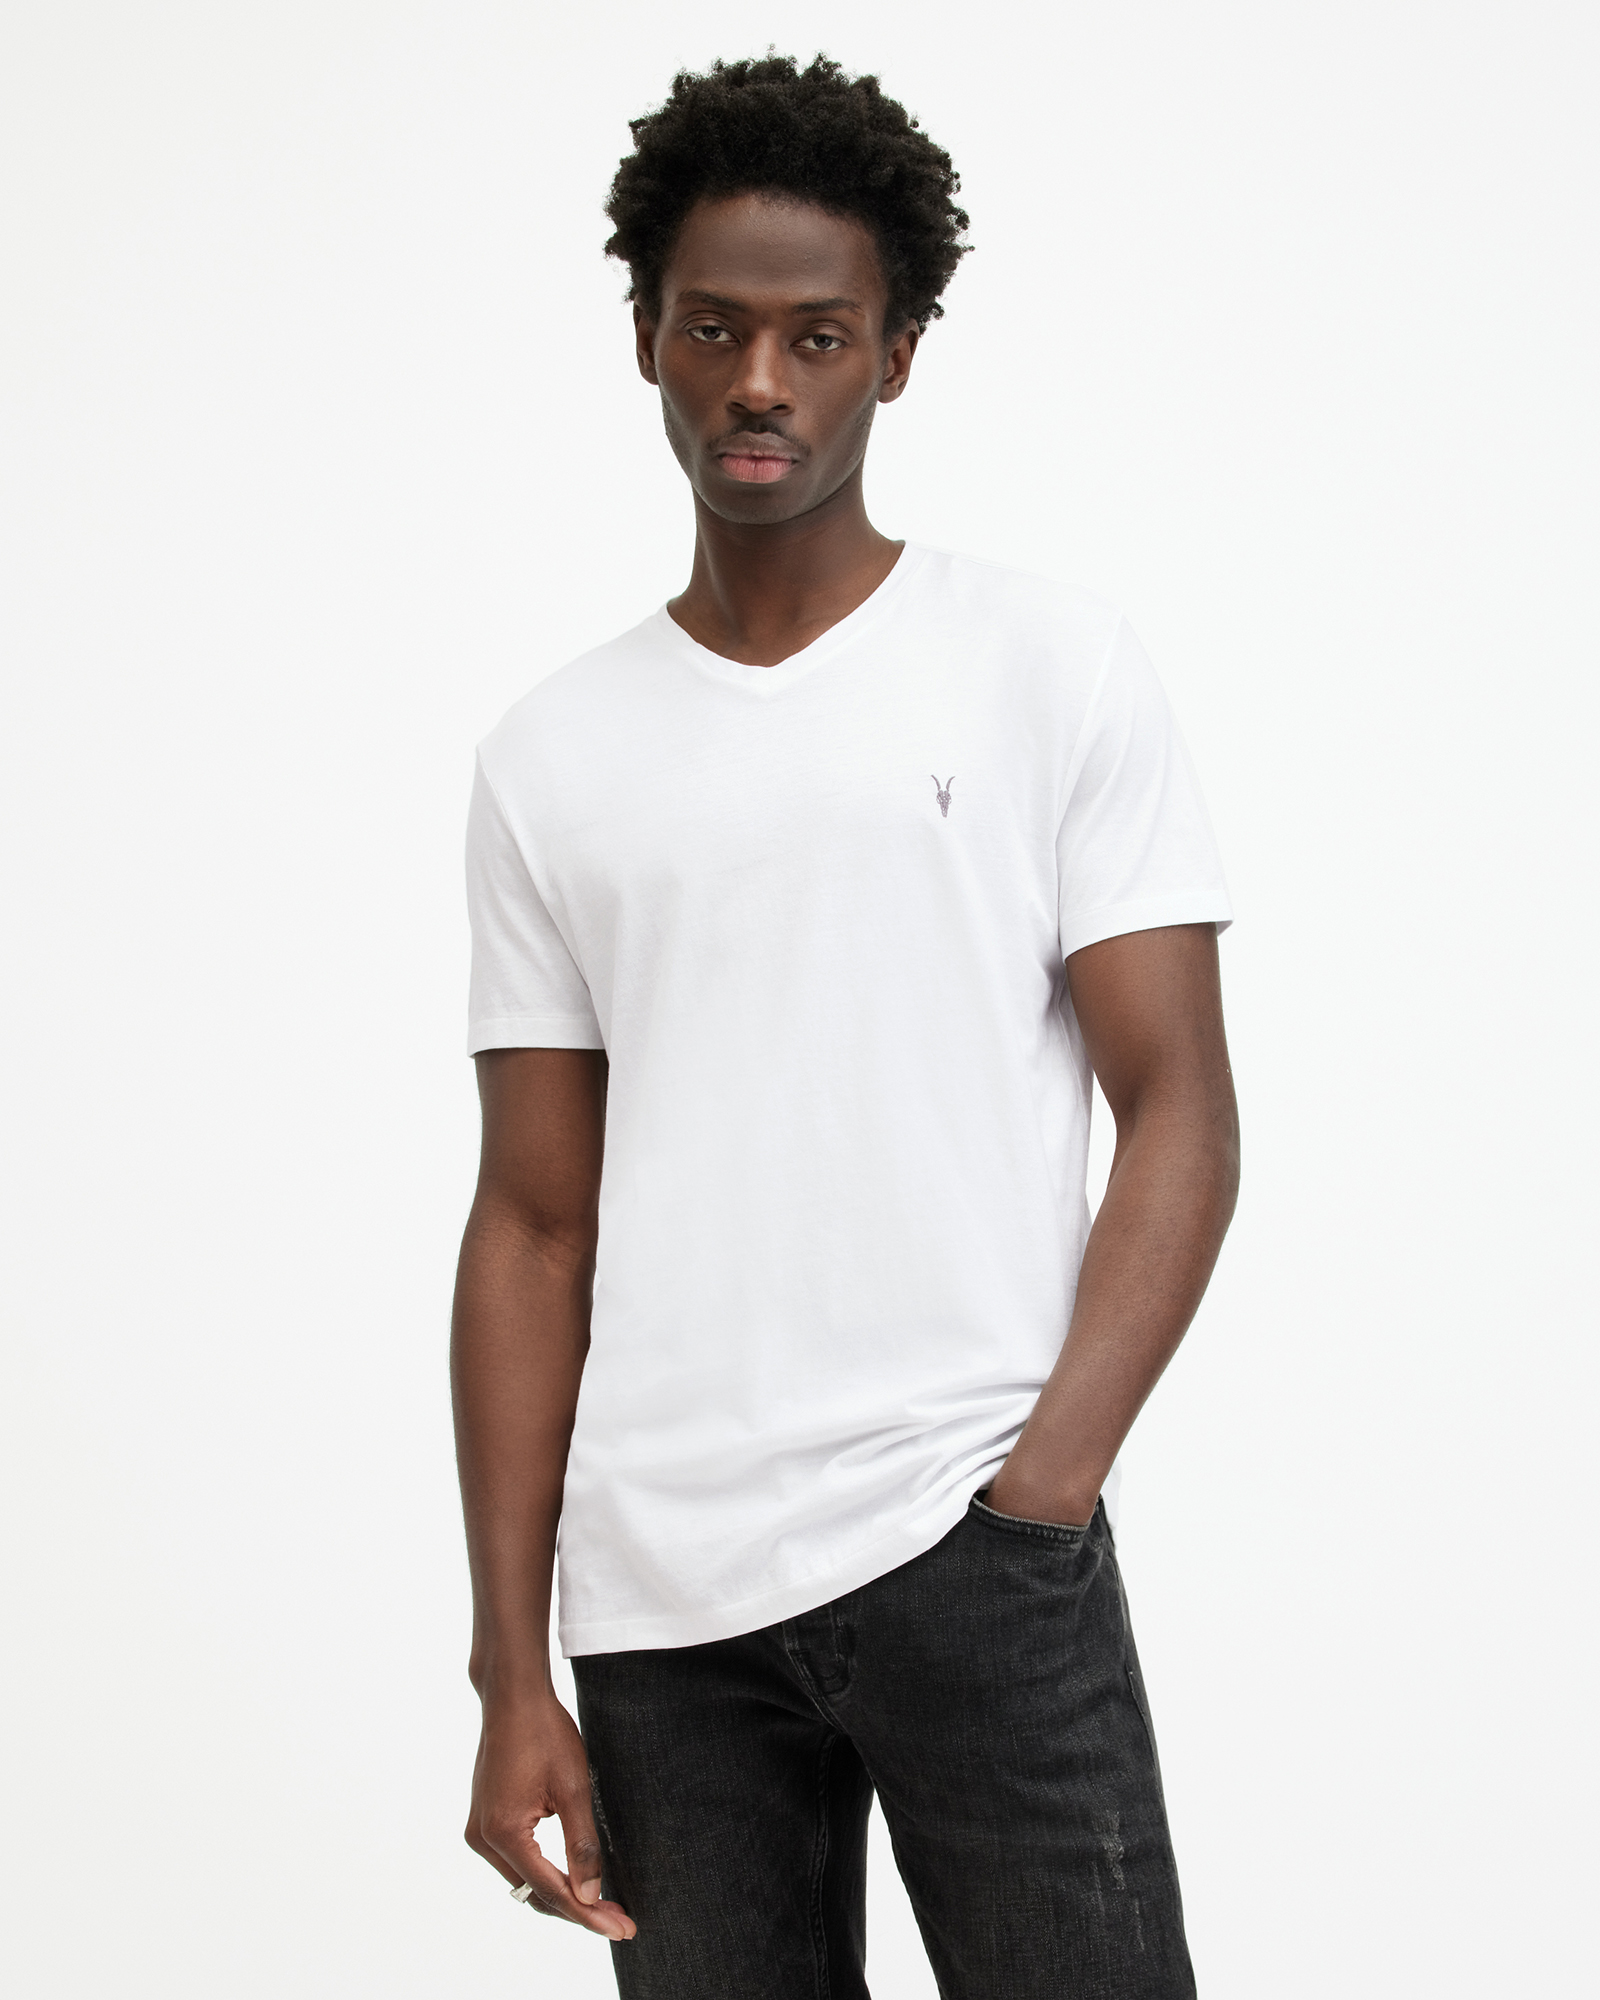 AllSaints Tonic V-Neck Slim Fit Ramskull T-Shirt,, White